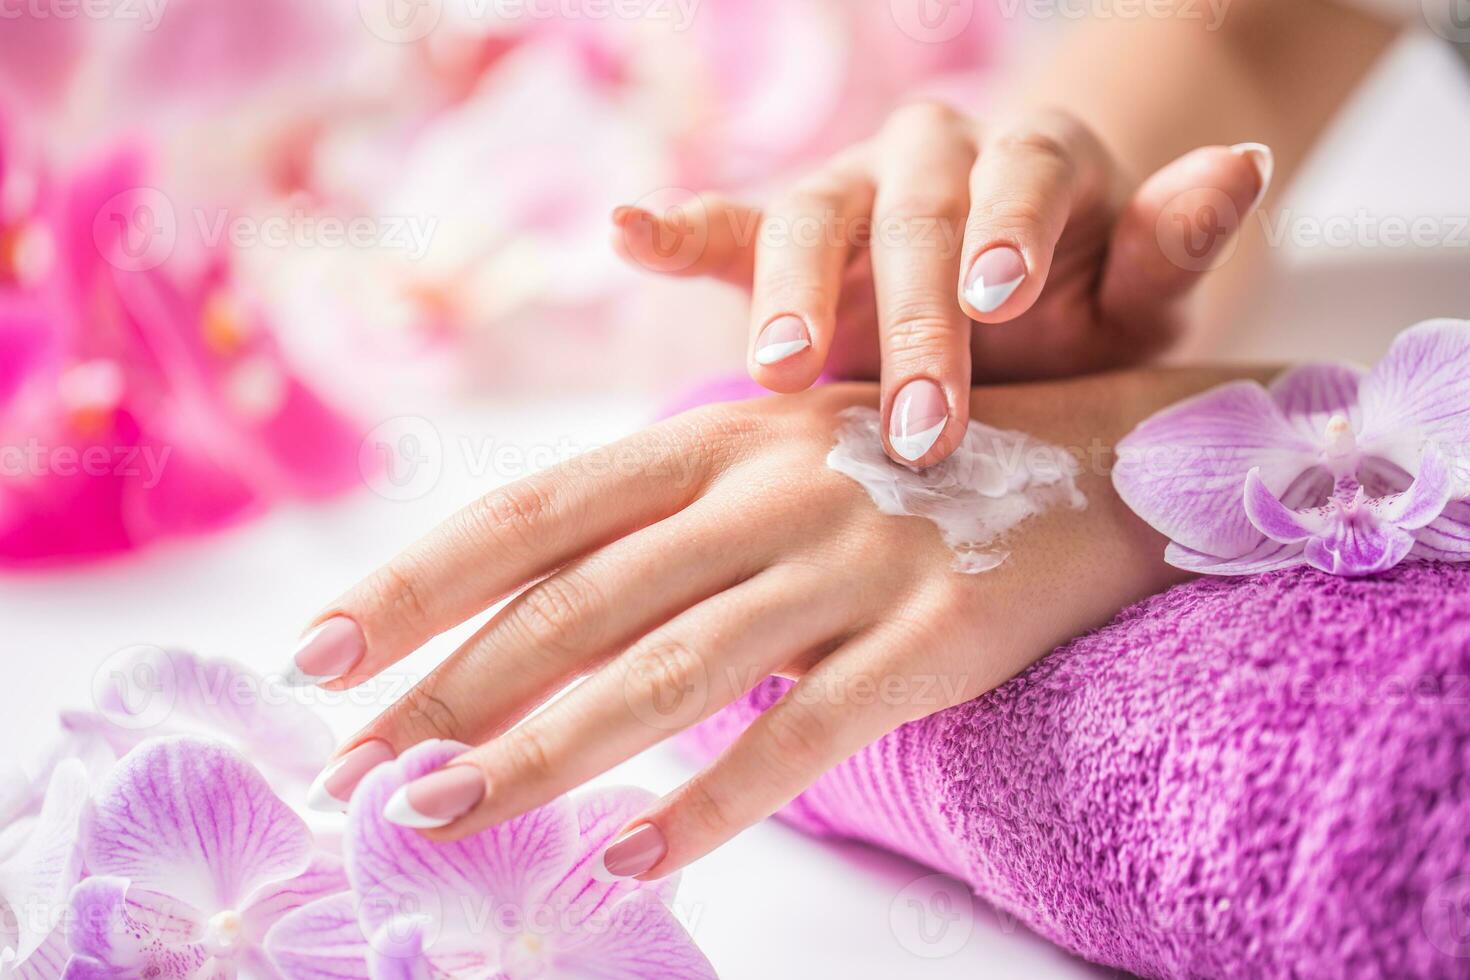 hermosa hembra manos aplicando mano crema. púrpura toalla y orquídea decoración. sano concepto - uñas spa piel cuidado y bienestar foto